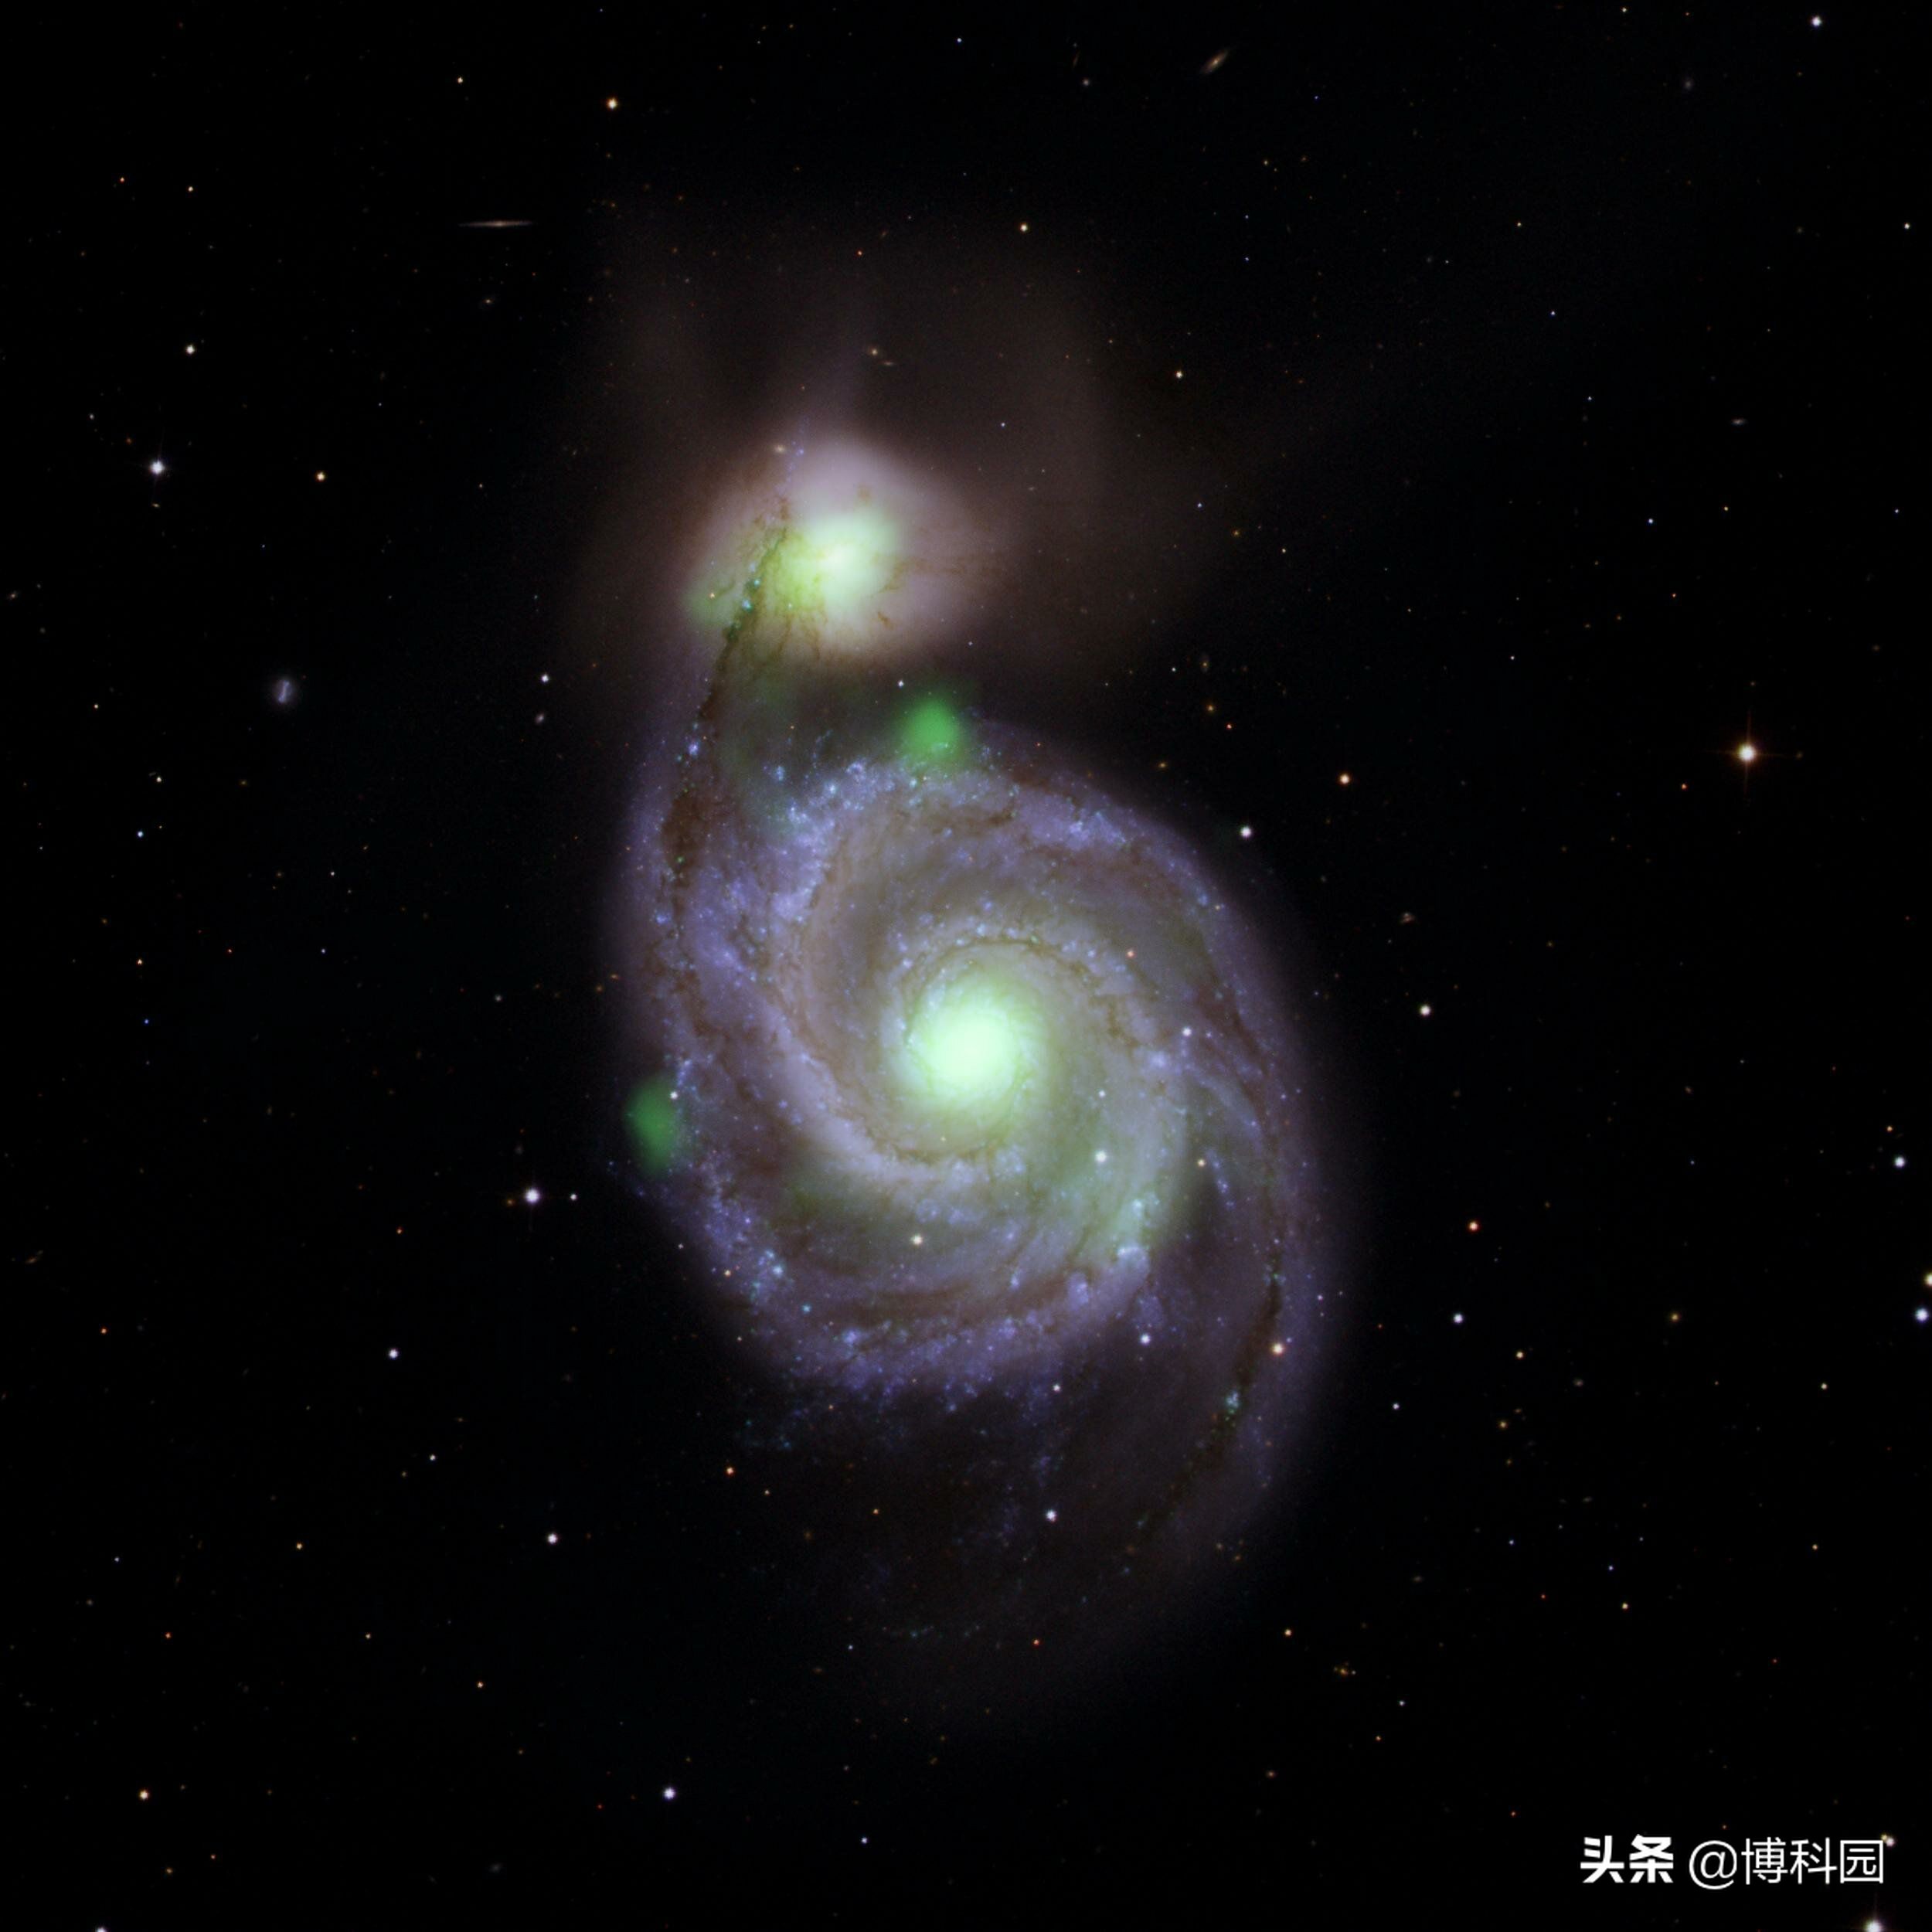 在碰撞星系中，黑洞周围亮度应超过所有恒星，但只是微弱的闪光！